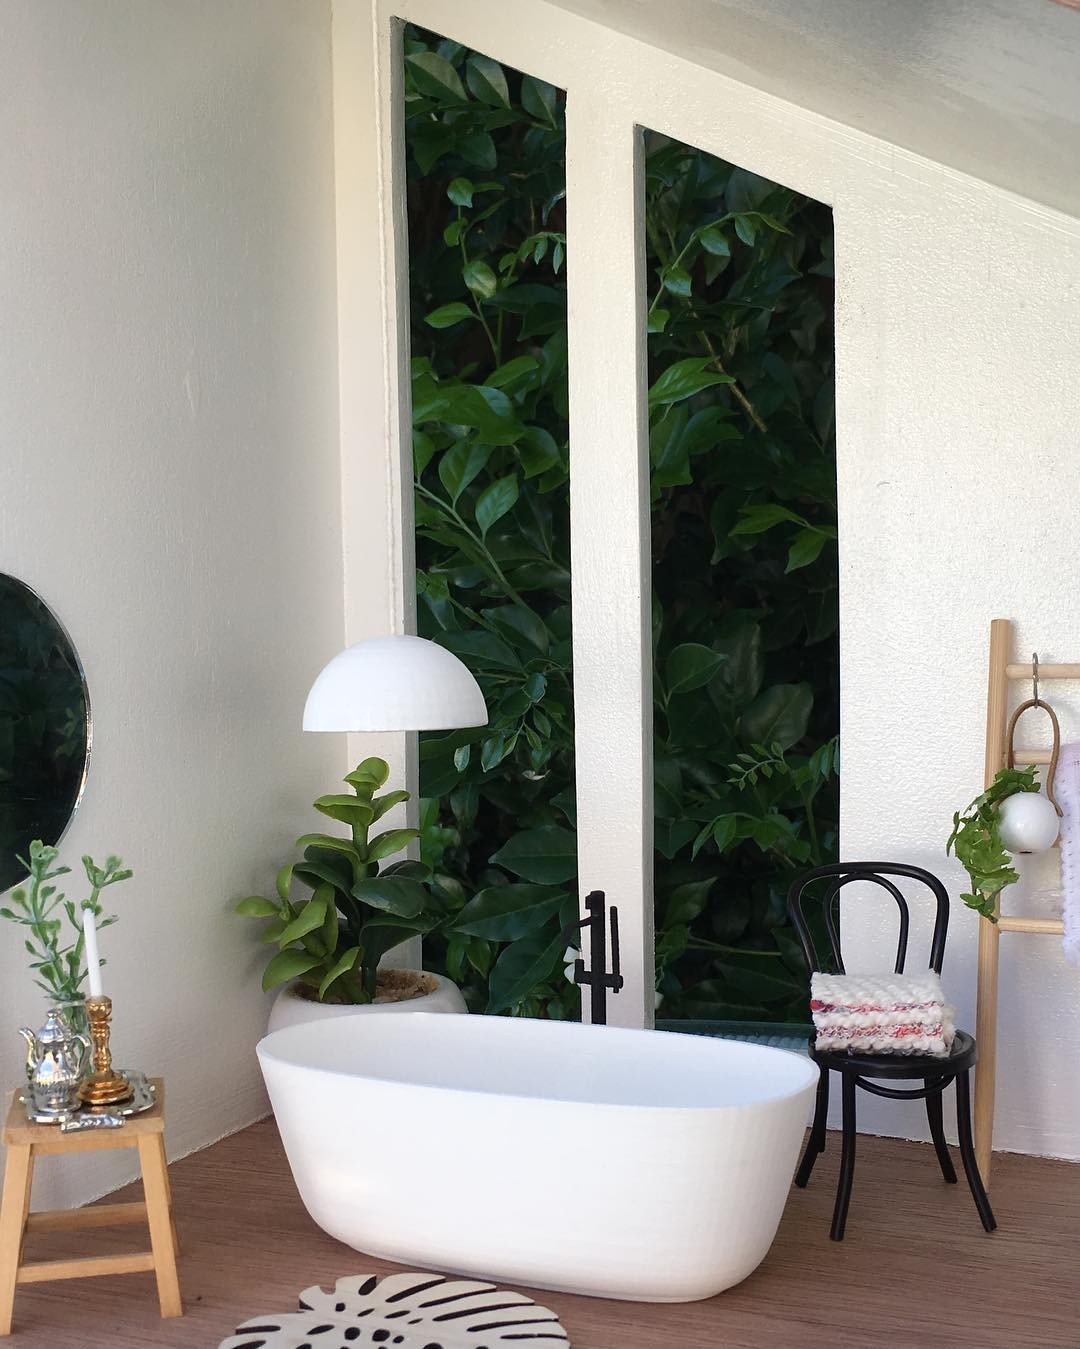 Banheiro de casa ou spa?  (Foto: Reprodução Instagram @mini_modern_designs)